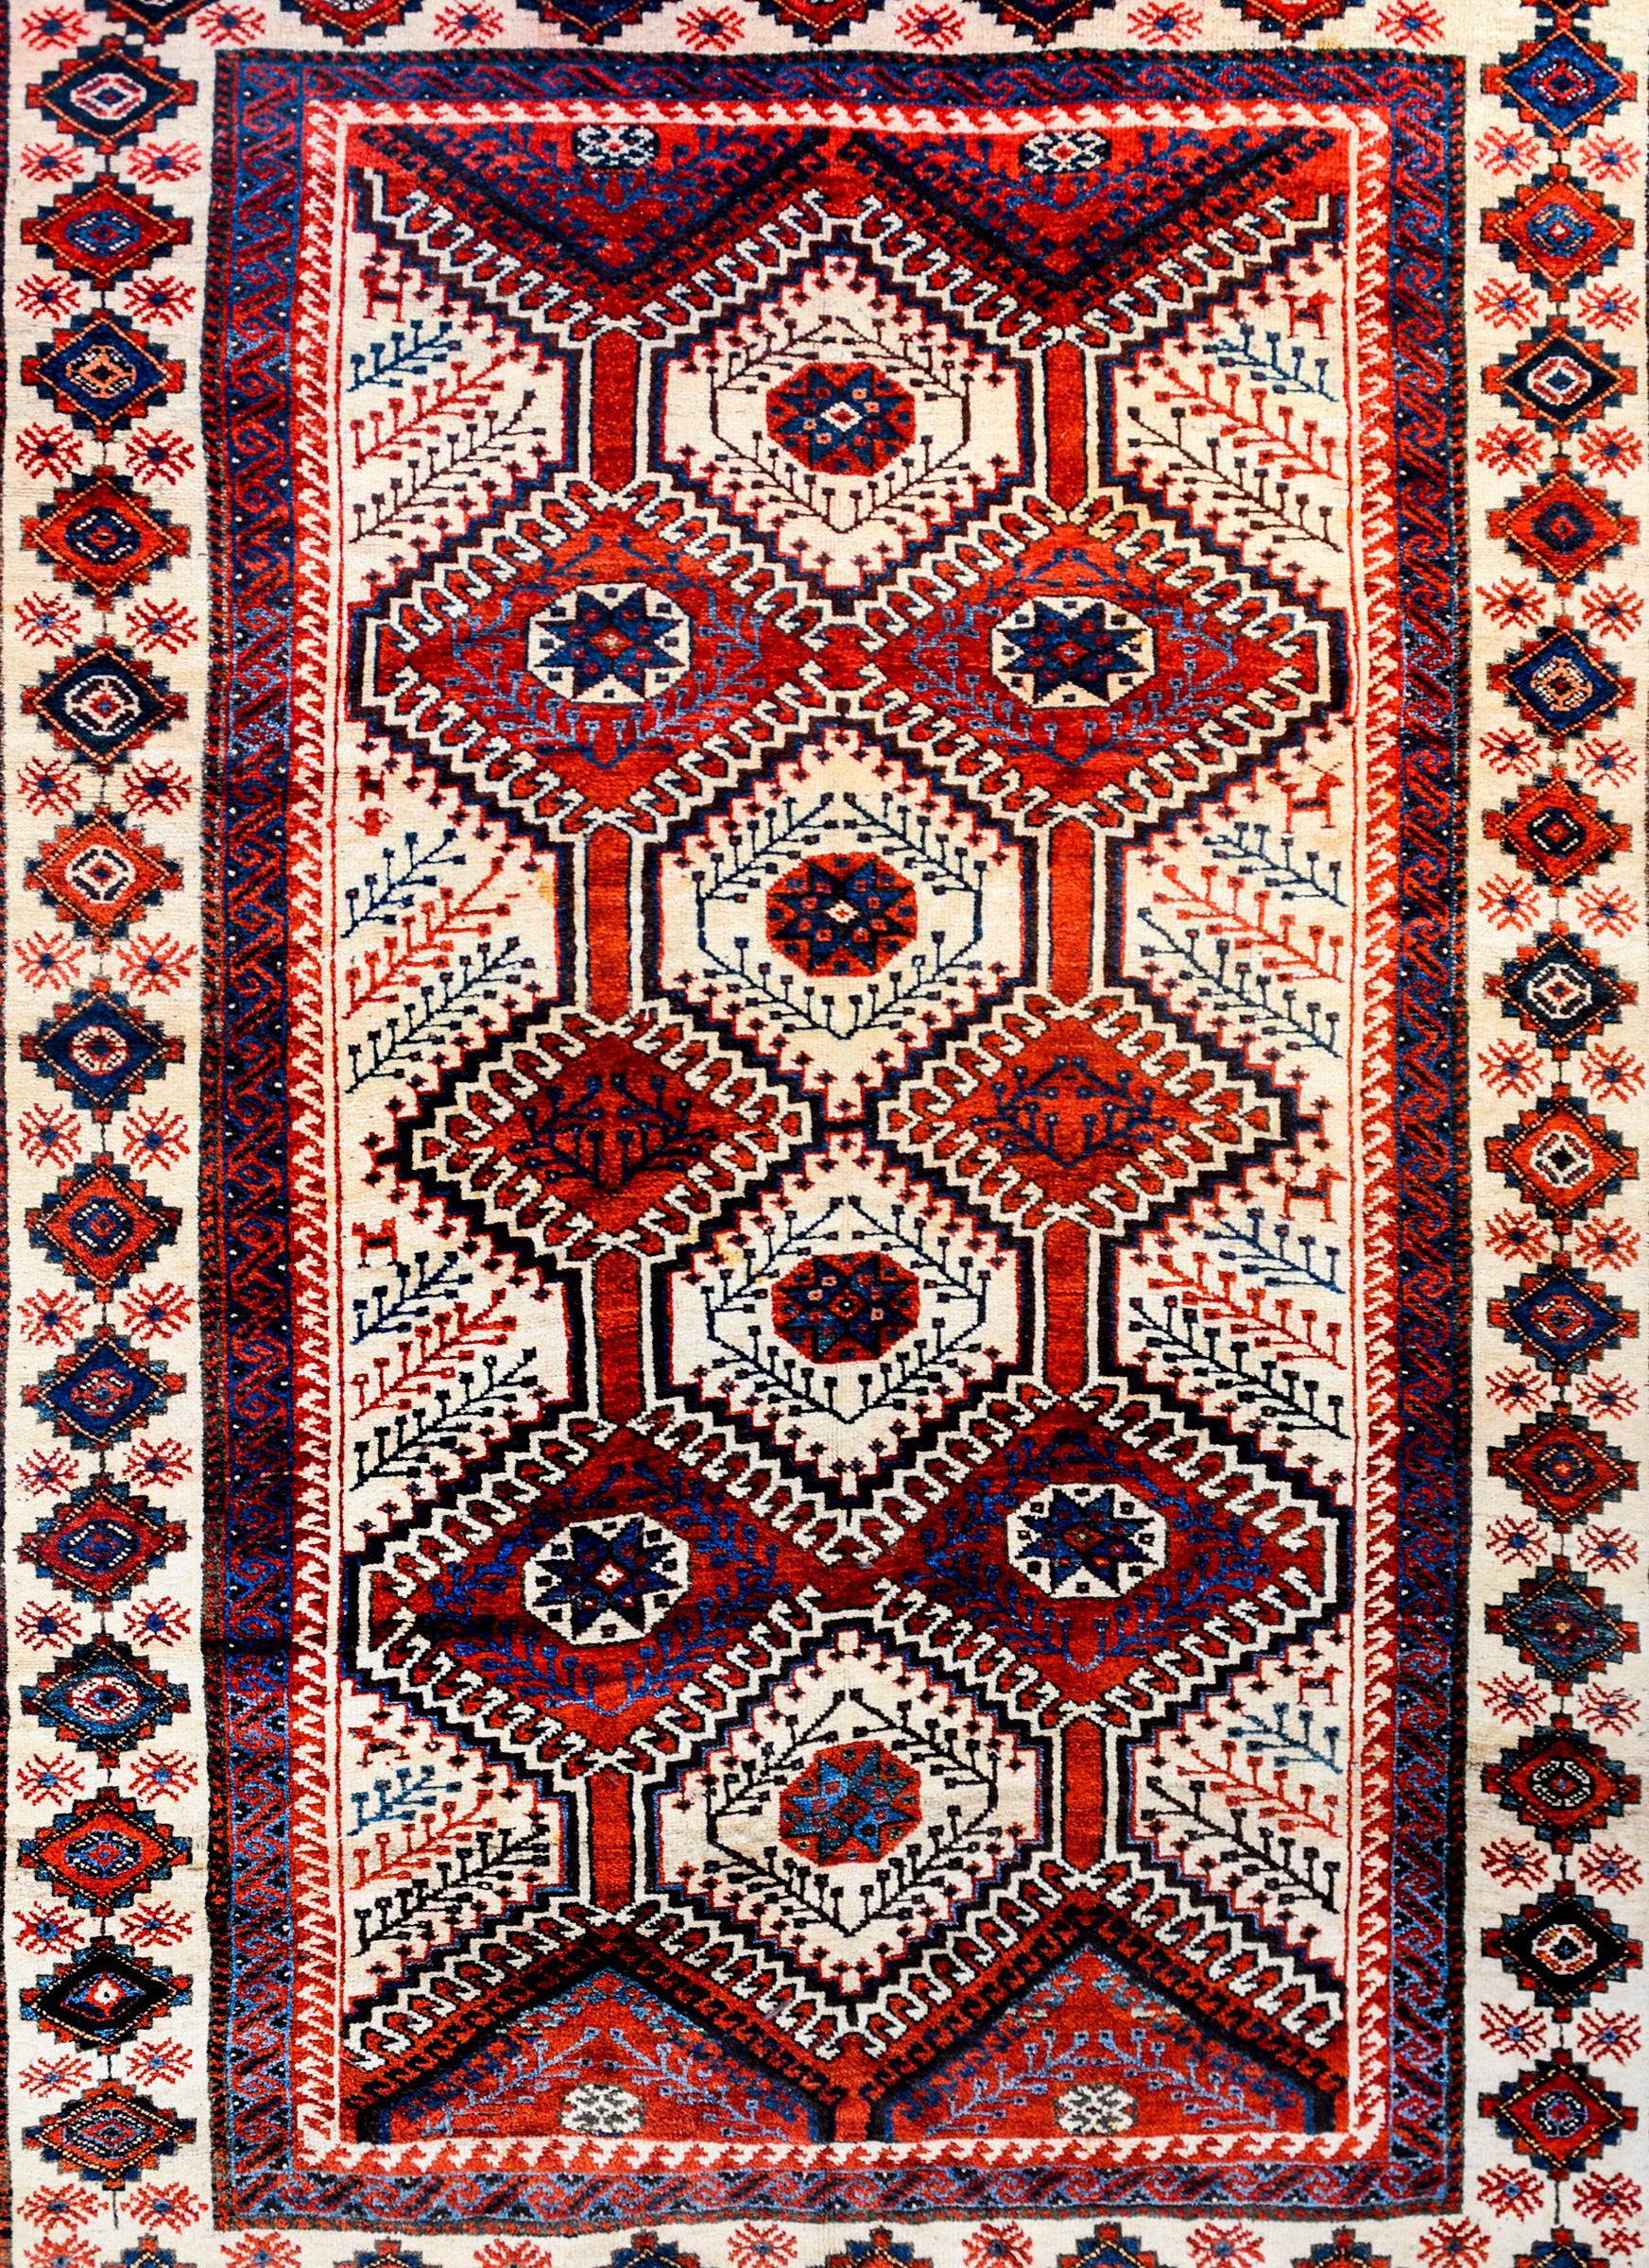 Un merveilleux tapis vintage persan Lori avec un motif tribal audacieux contenant de multiples médaillons à motifs de diamants au milieu d'un champ cramoisi et indigo, le tout avec un petit motif stylisé de vigne et de feuille. La bordure est